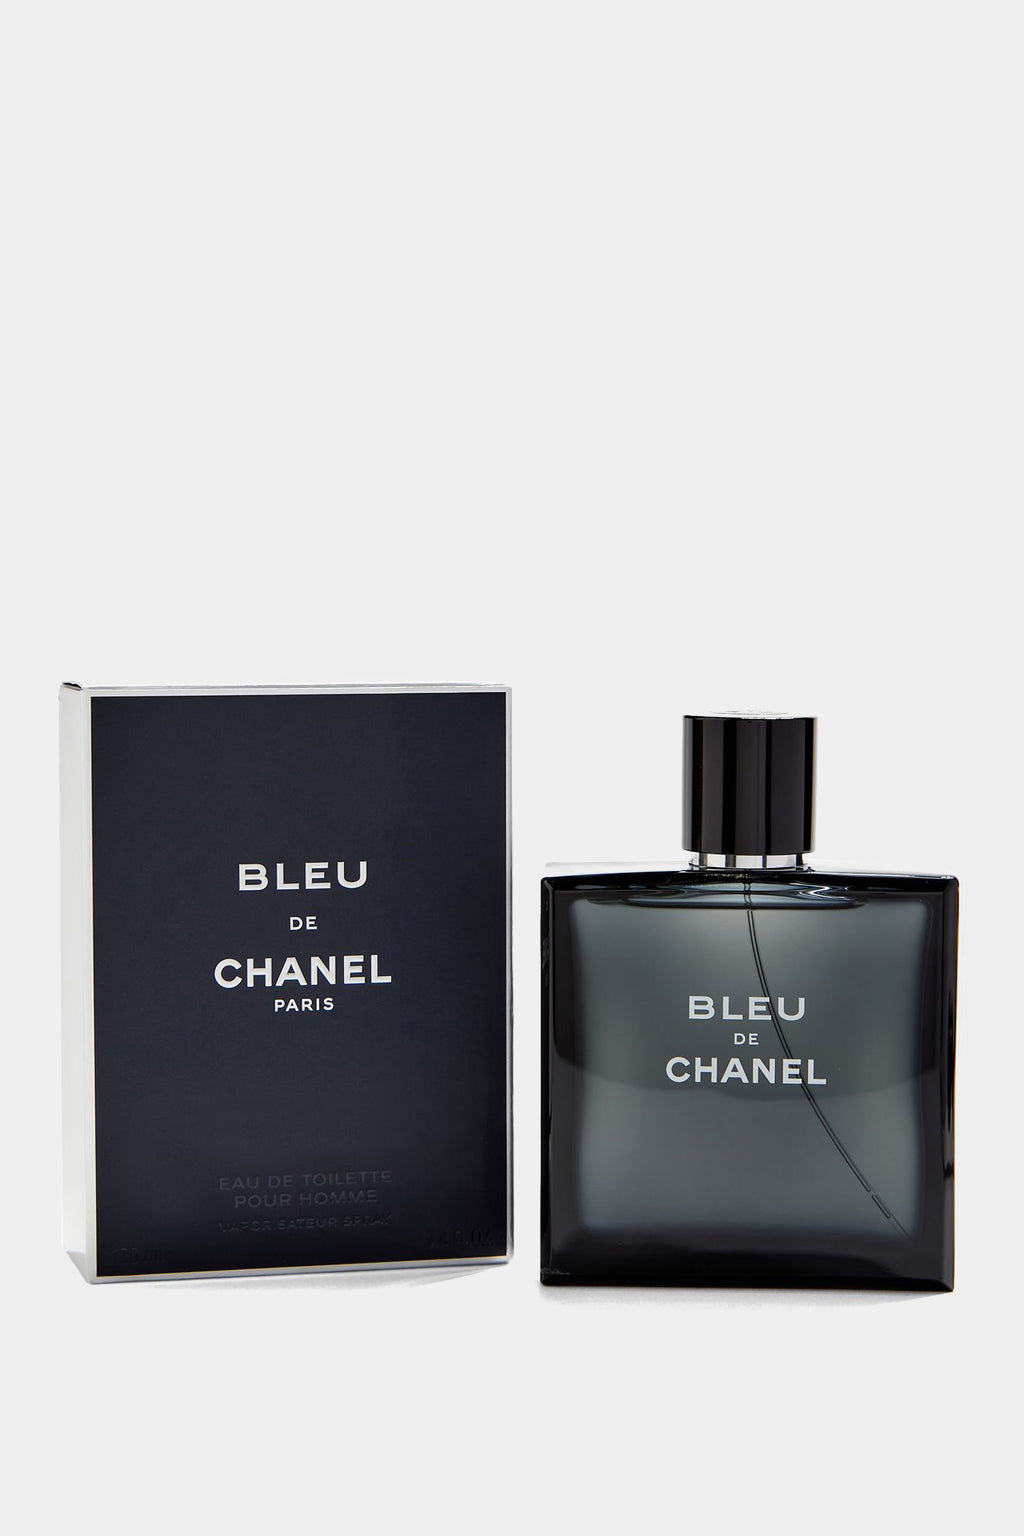 Chanel - Bleu Eau de Toilette